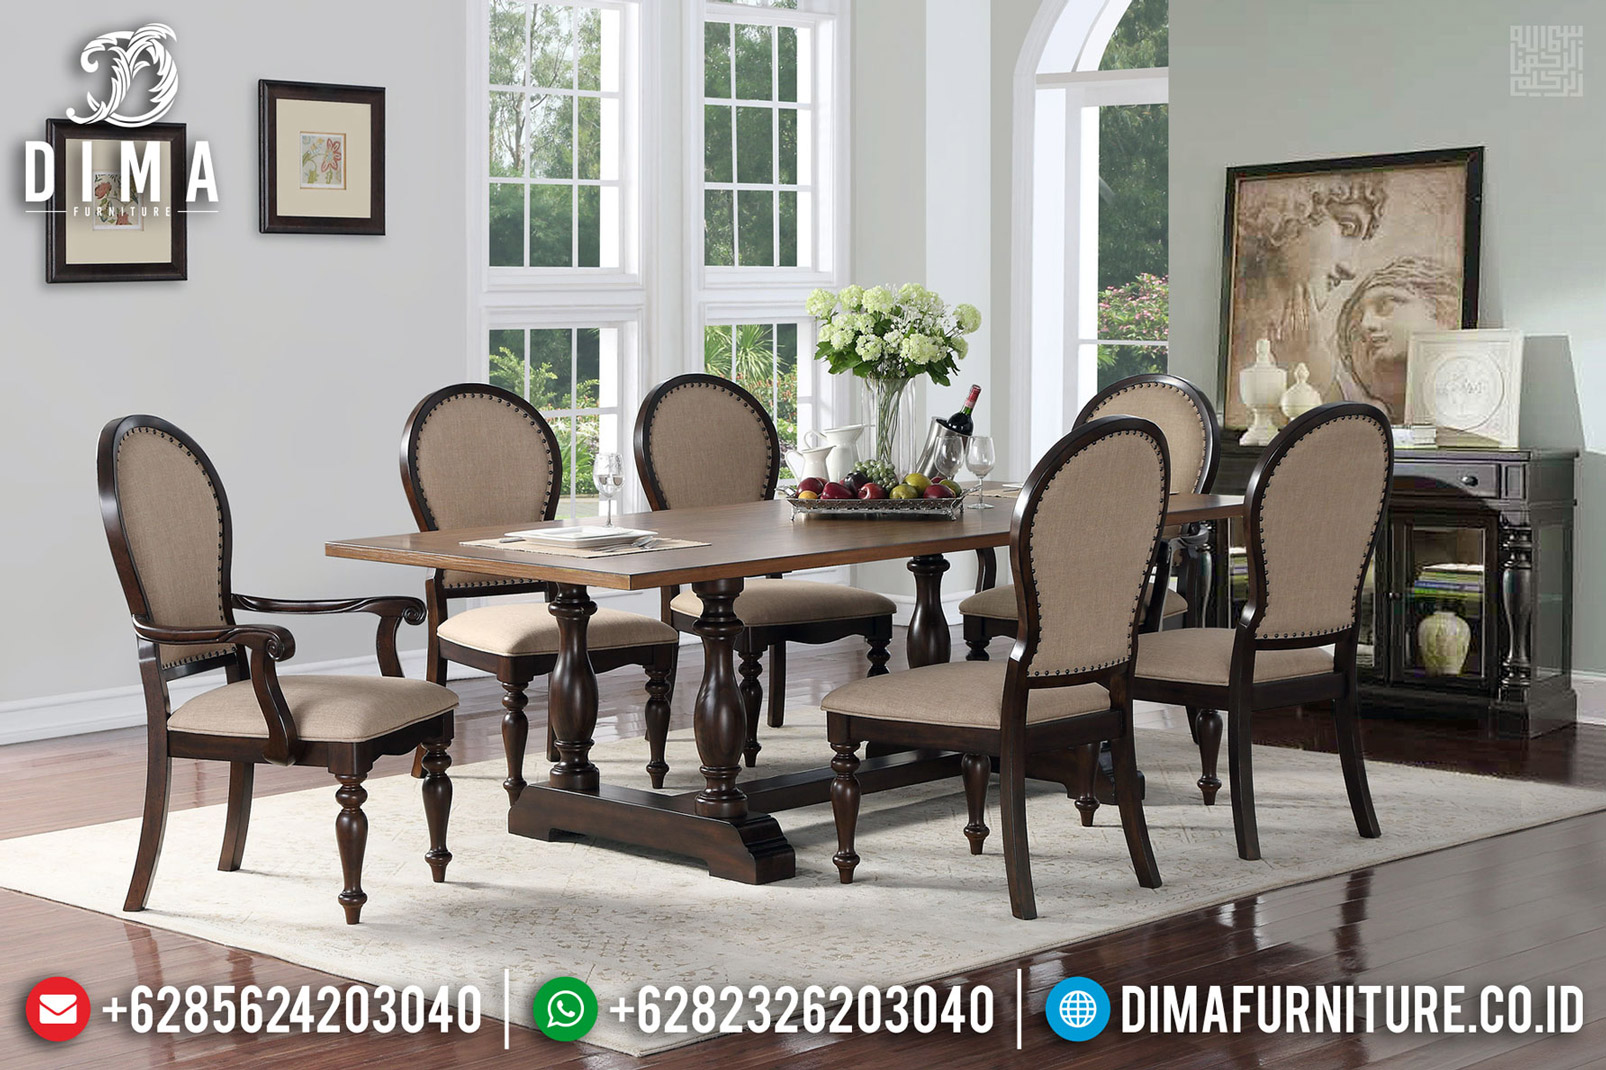 Harga Meja Makan Klasik Natural Jati Furniture Jepara TTJ-0578